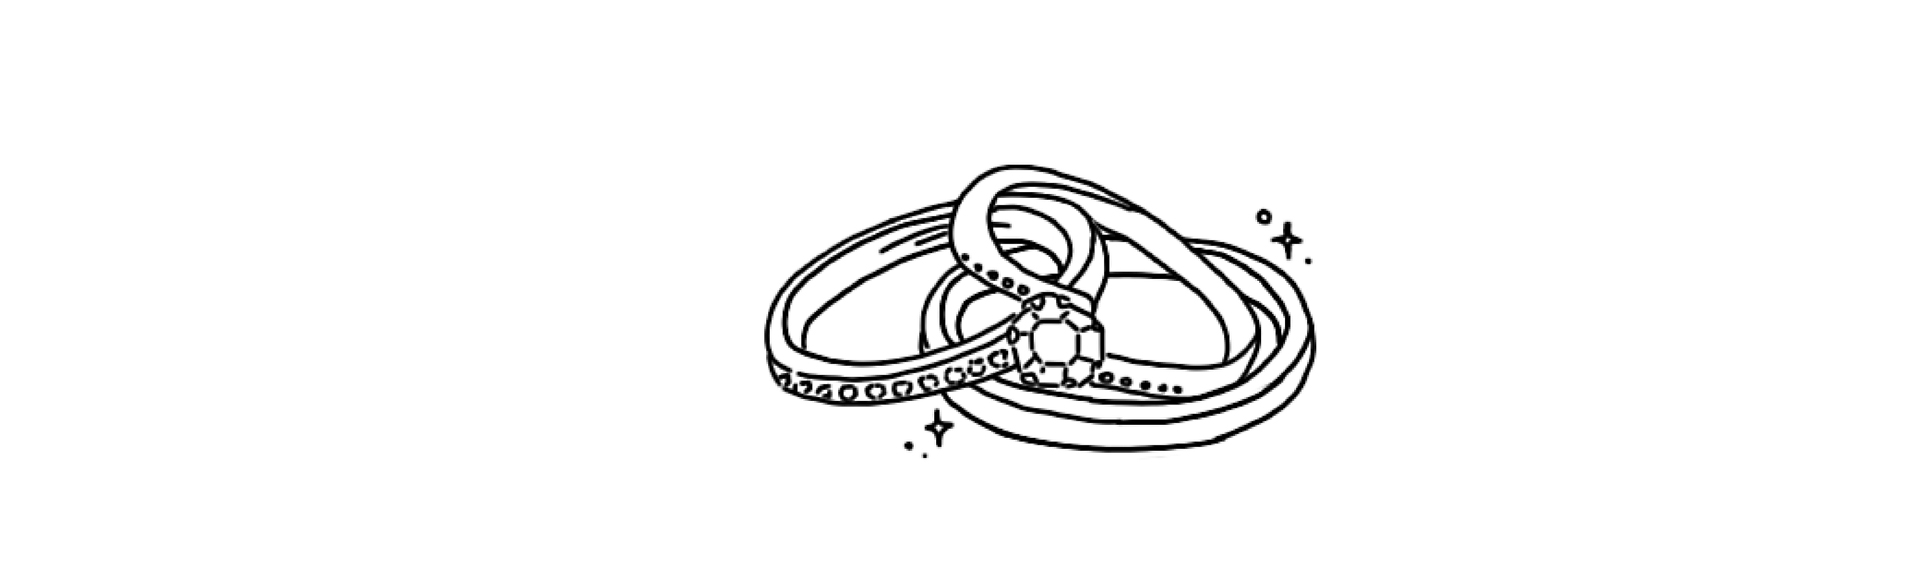 結婚指輪・婚約指輪 手作り同時制作コース